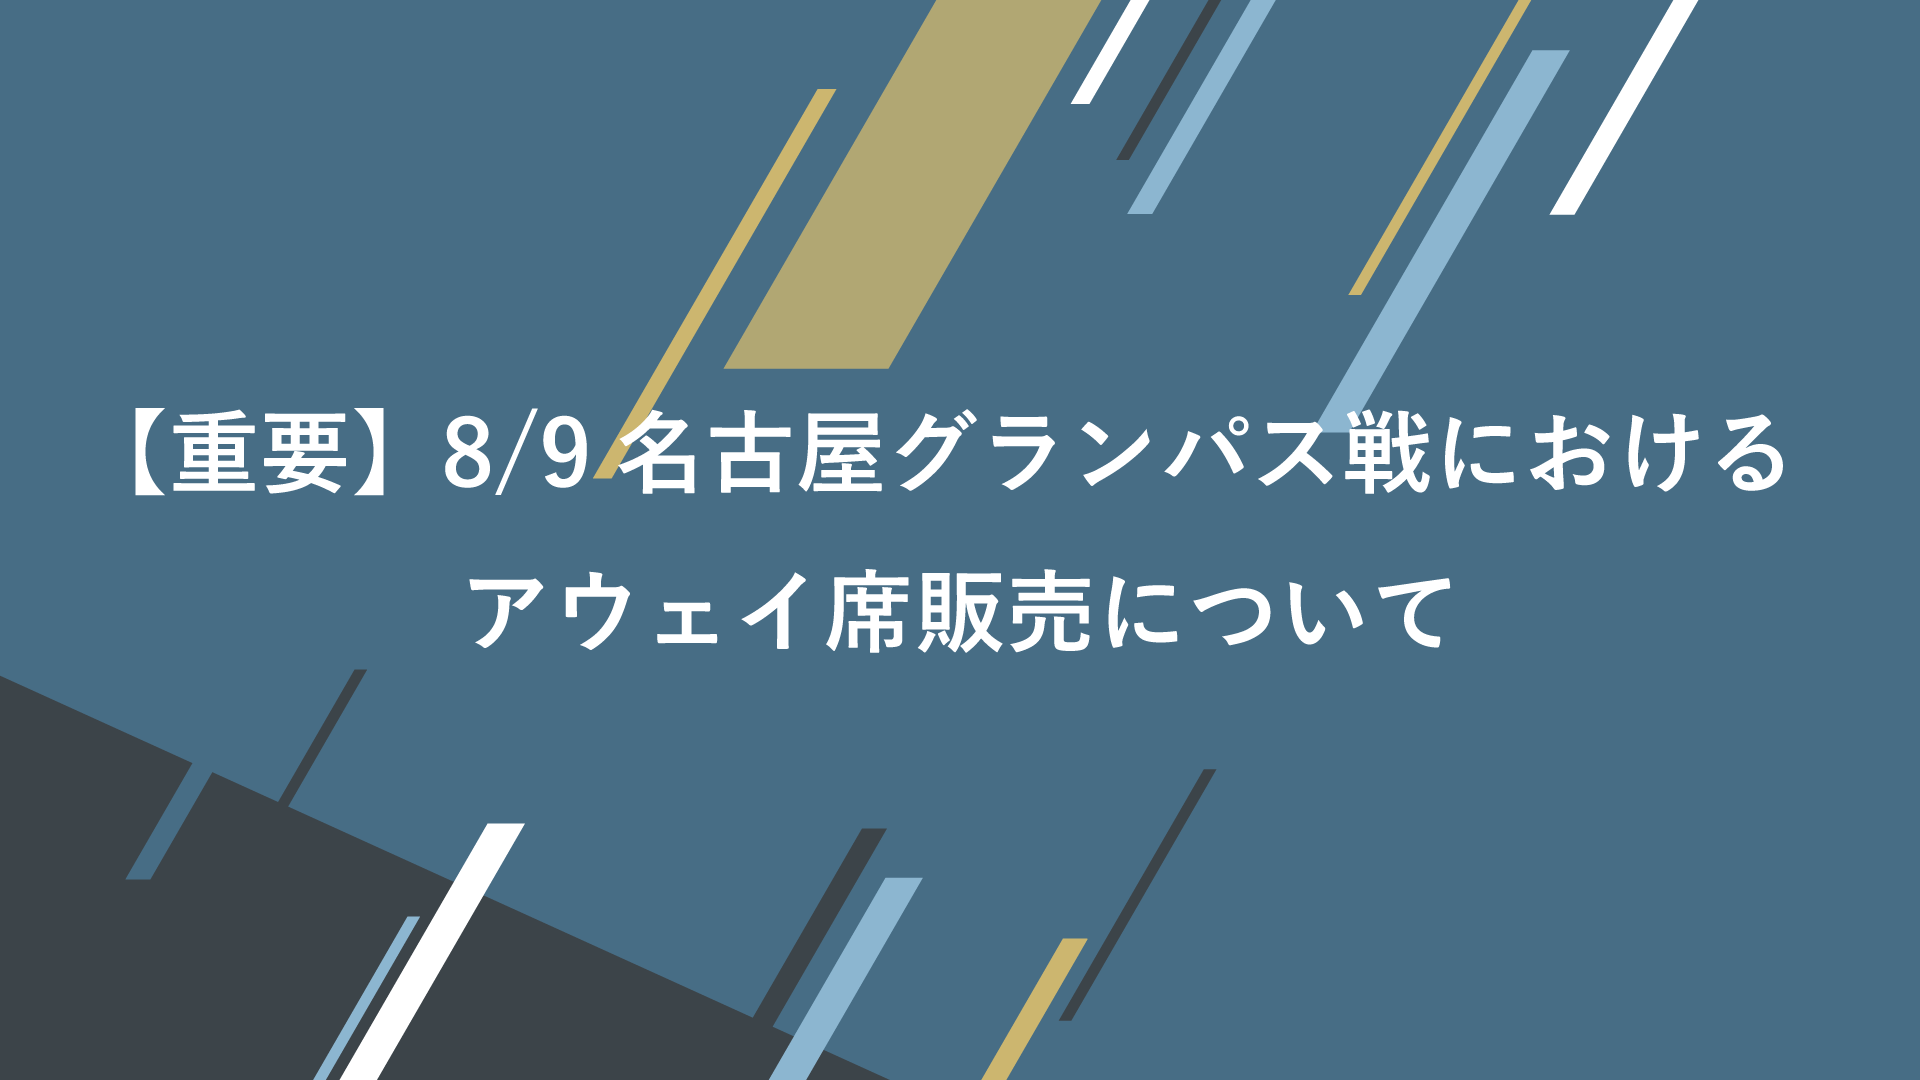 重要 8 9 月 祝 名古屋グランパス戦におけるアウェイ席販売について 横浜fcオフィシャルウェブサイト